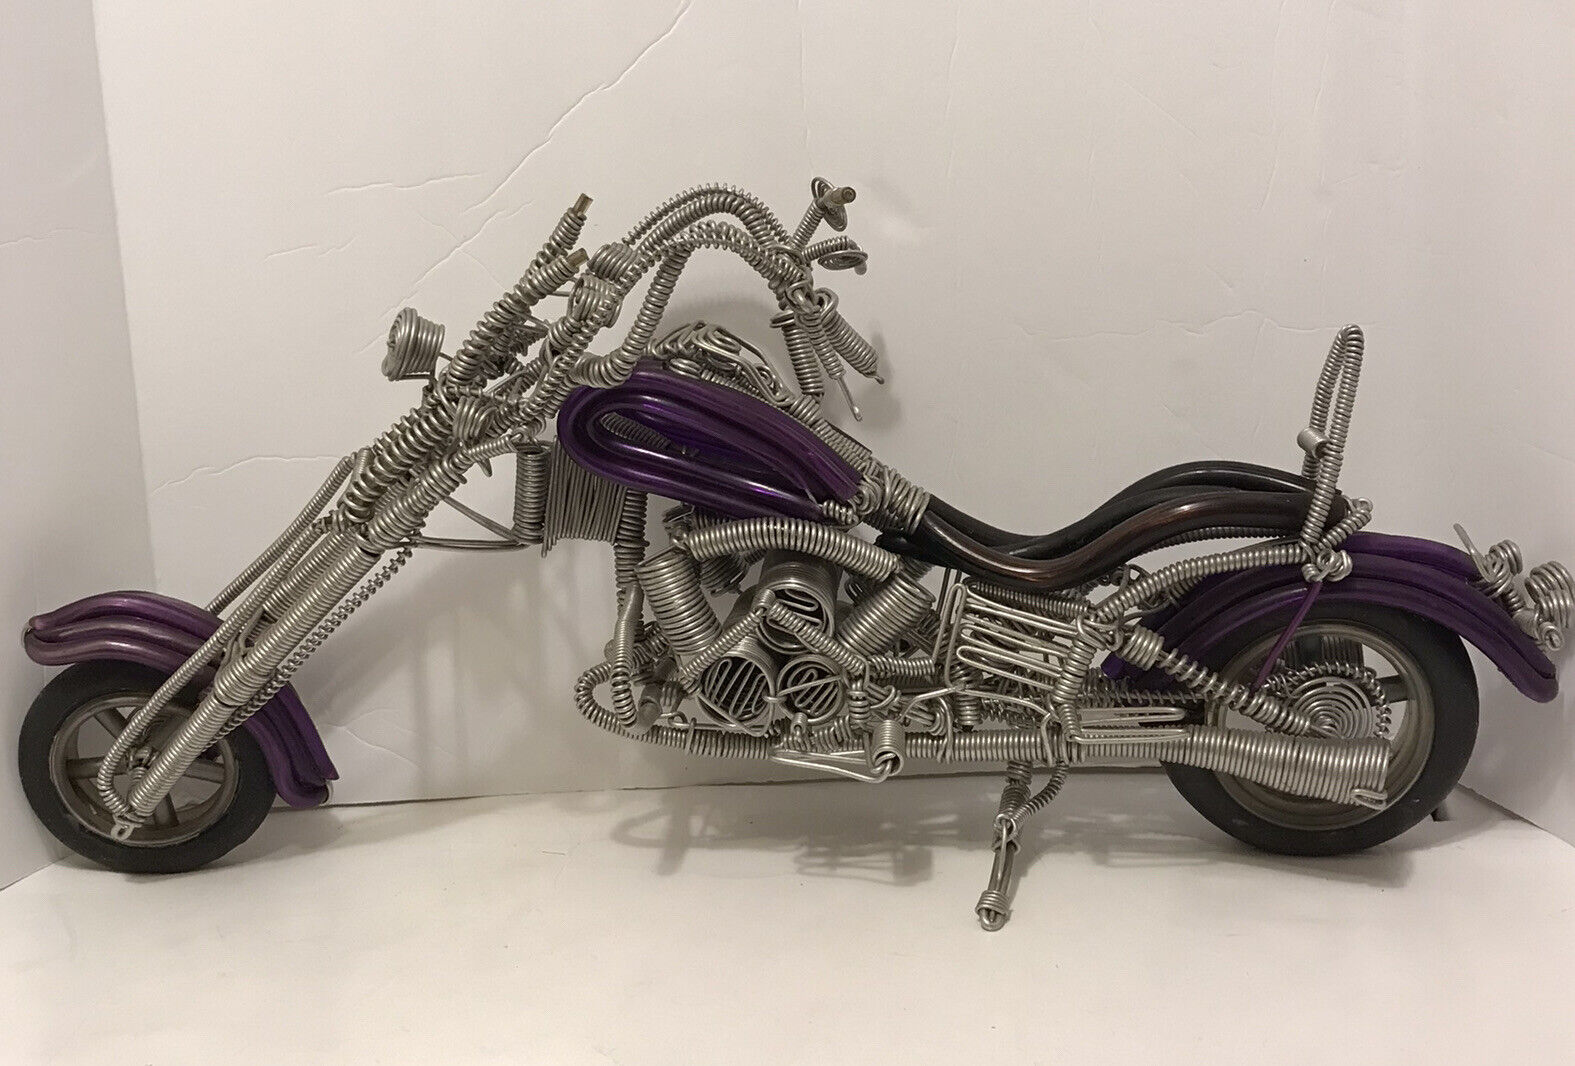 Vintage Handmade Metal Wire Chopper Motorcycle Sculpture Art Model.